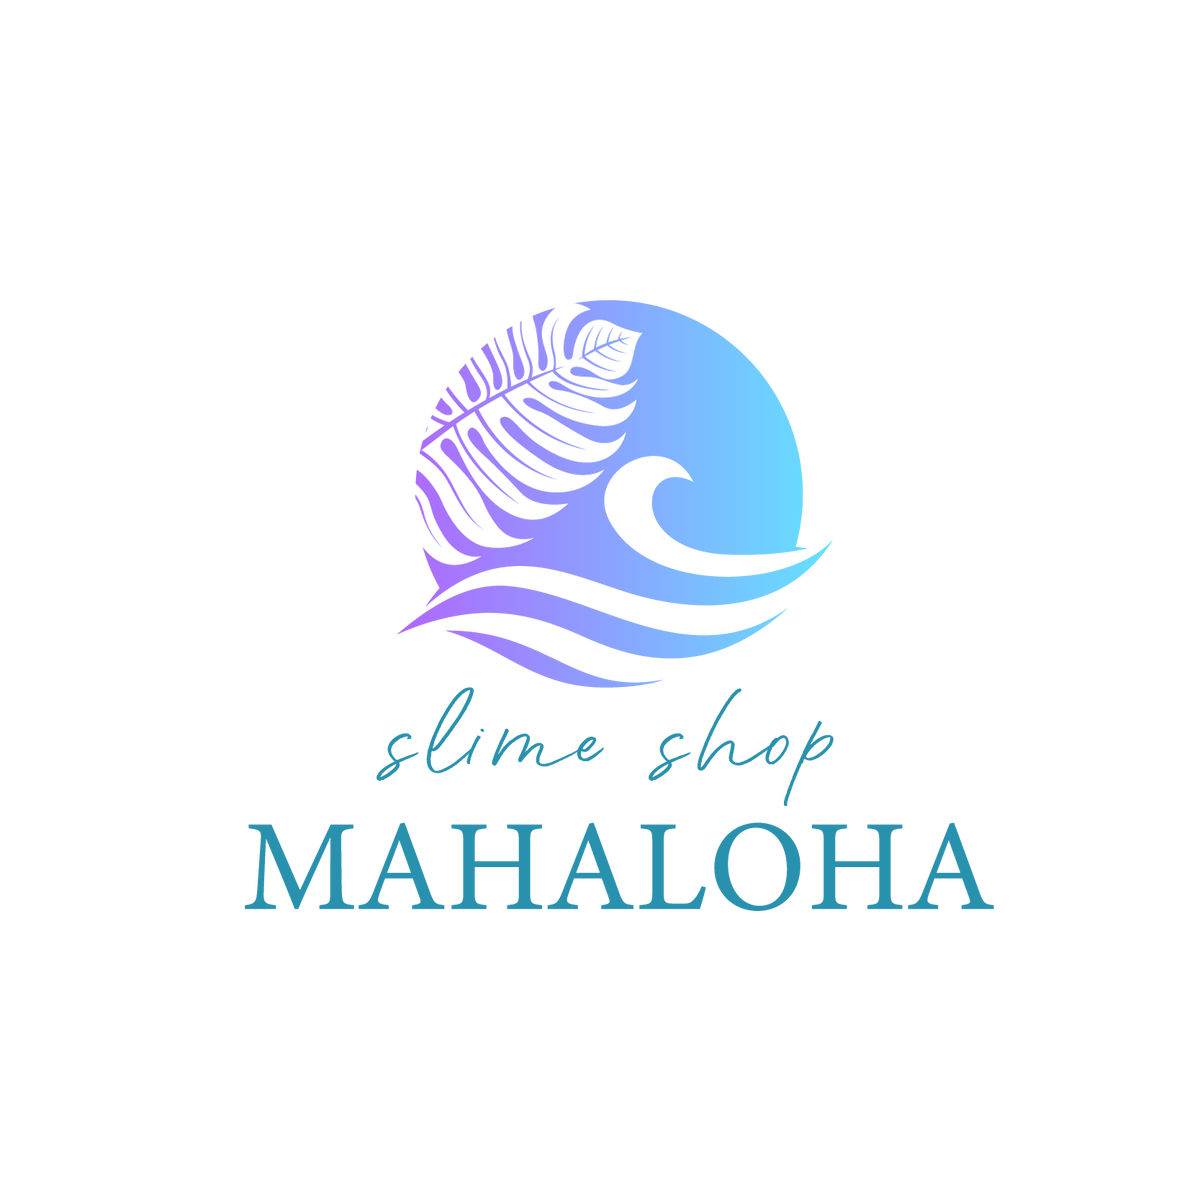 About Mahaloha Slime